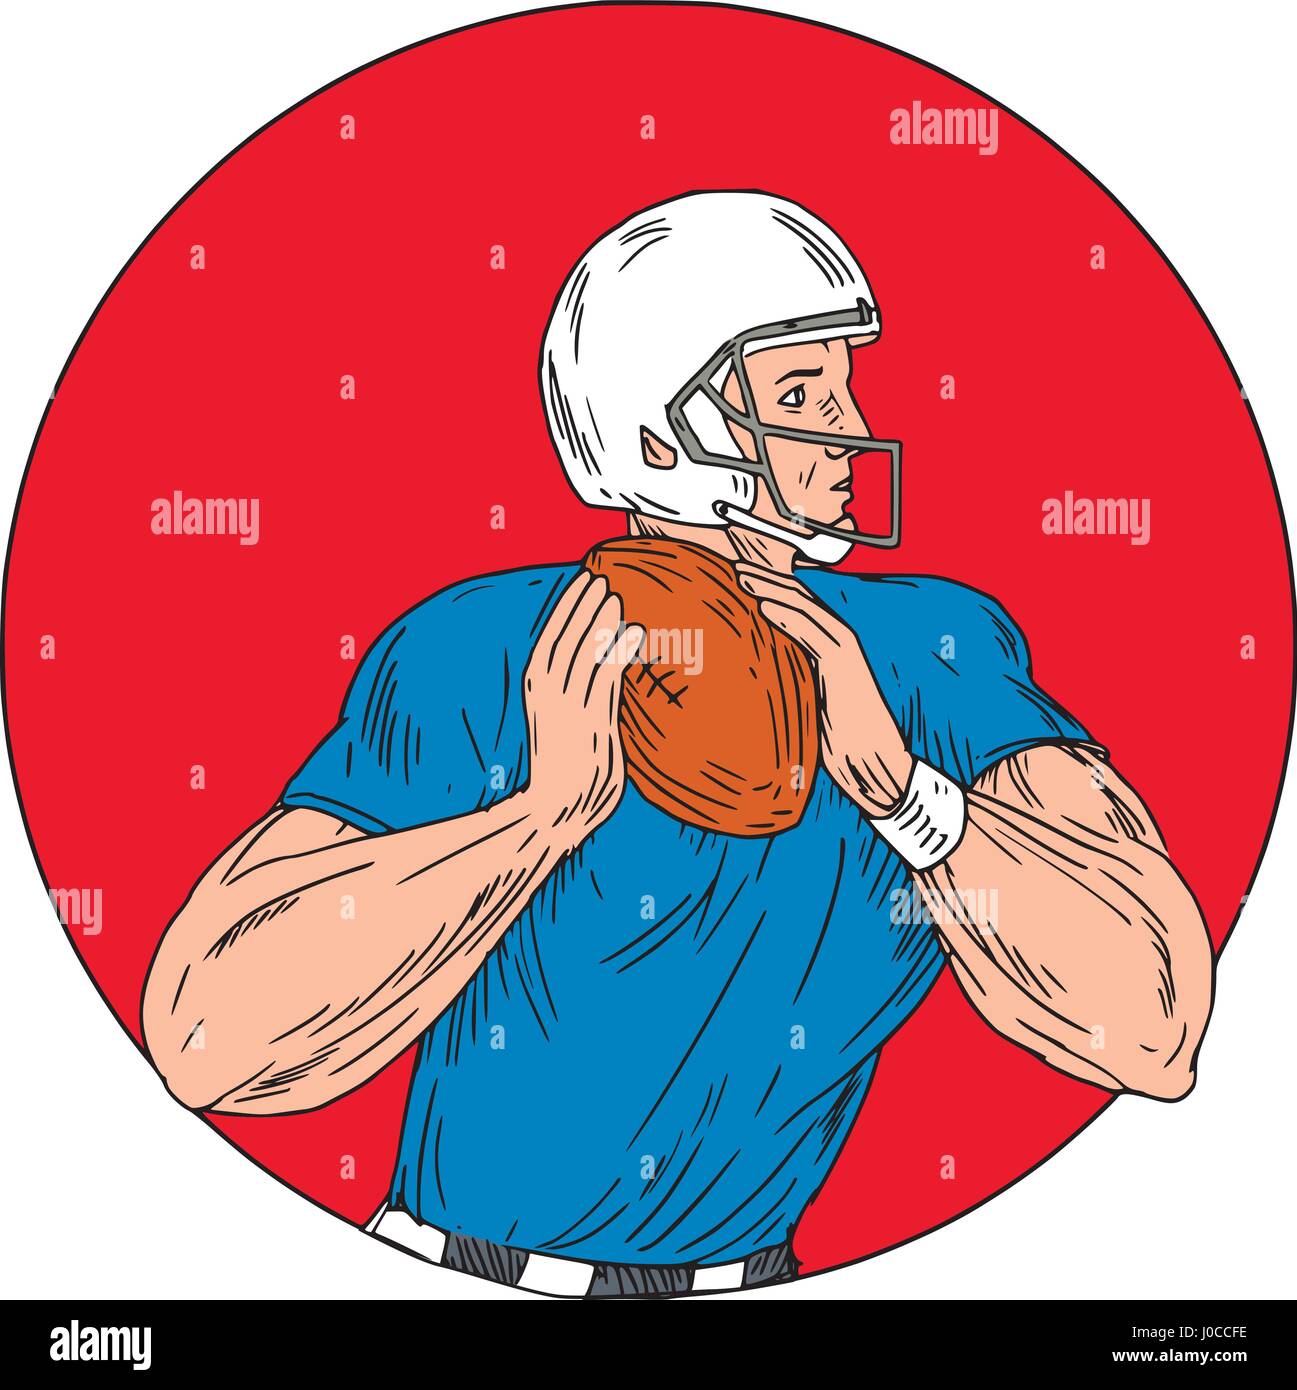 Style croquis dessin illustration d'un quarterback de football américain gridiron player holding ball prêt à jeter ball vu du côté situé à l'intérieur Illustration de Vecteur